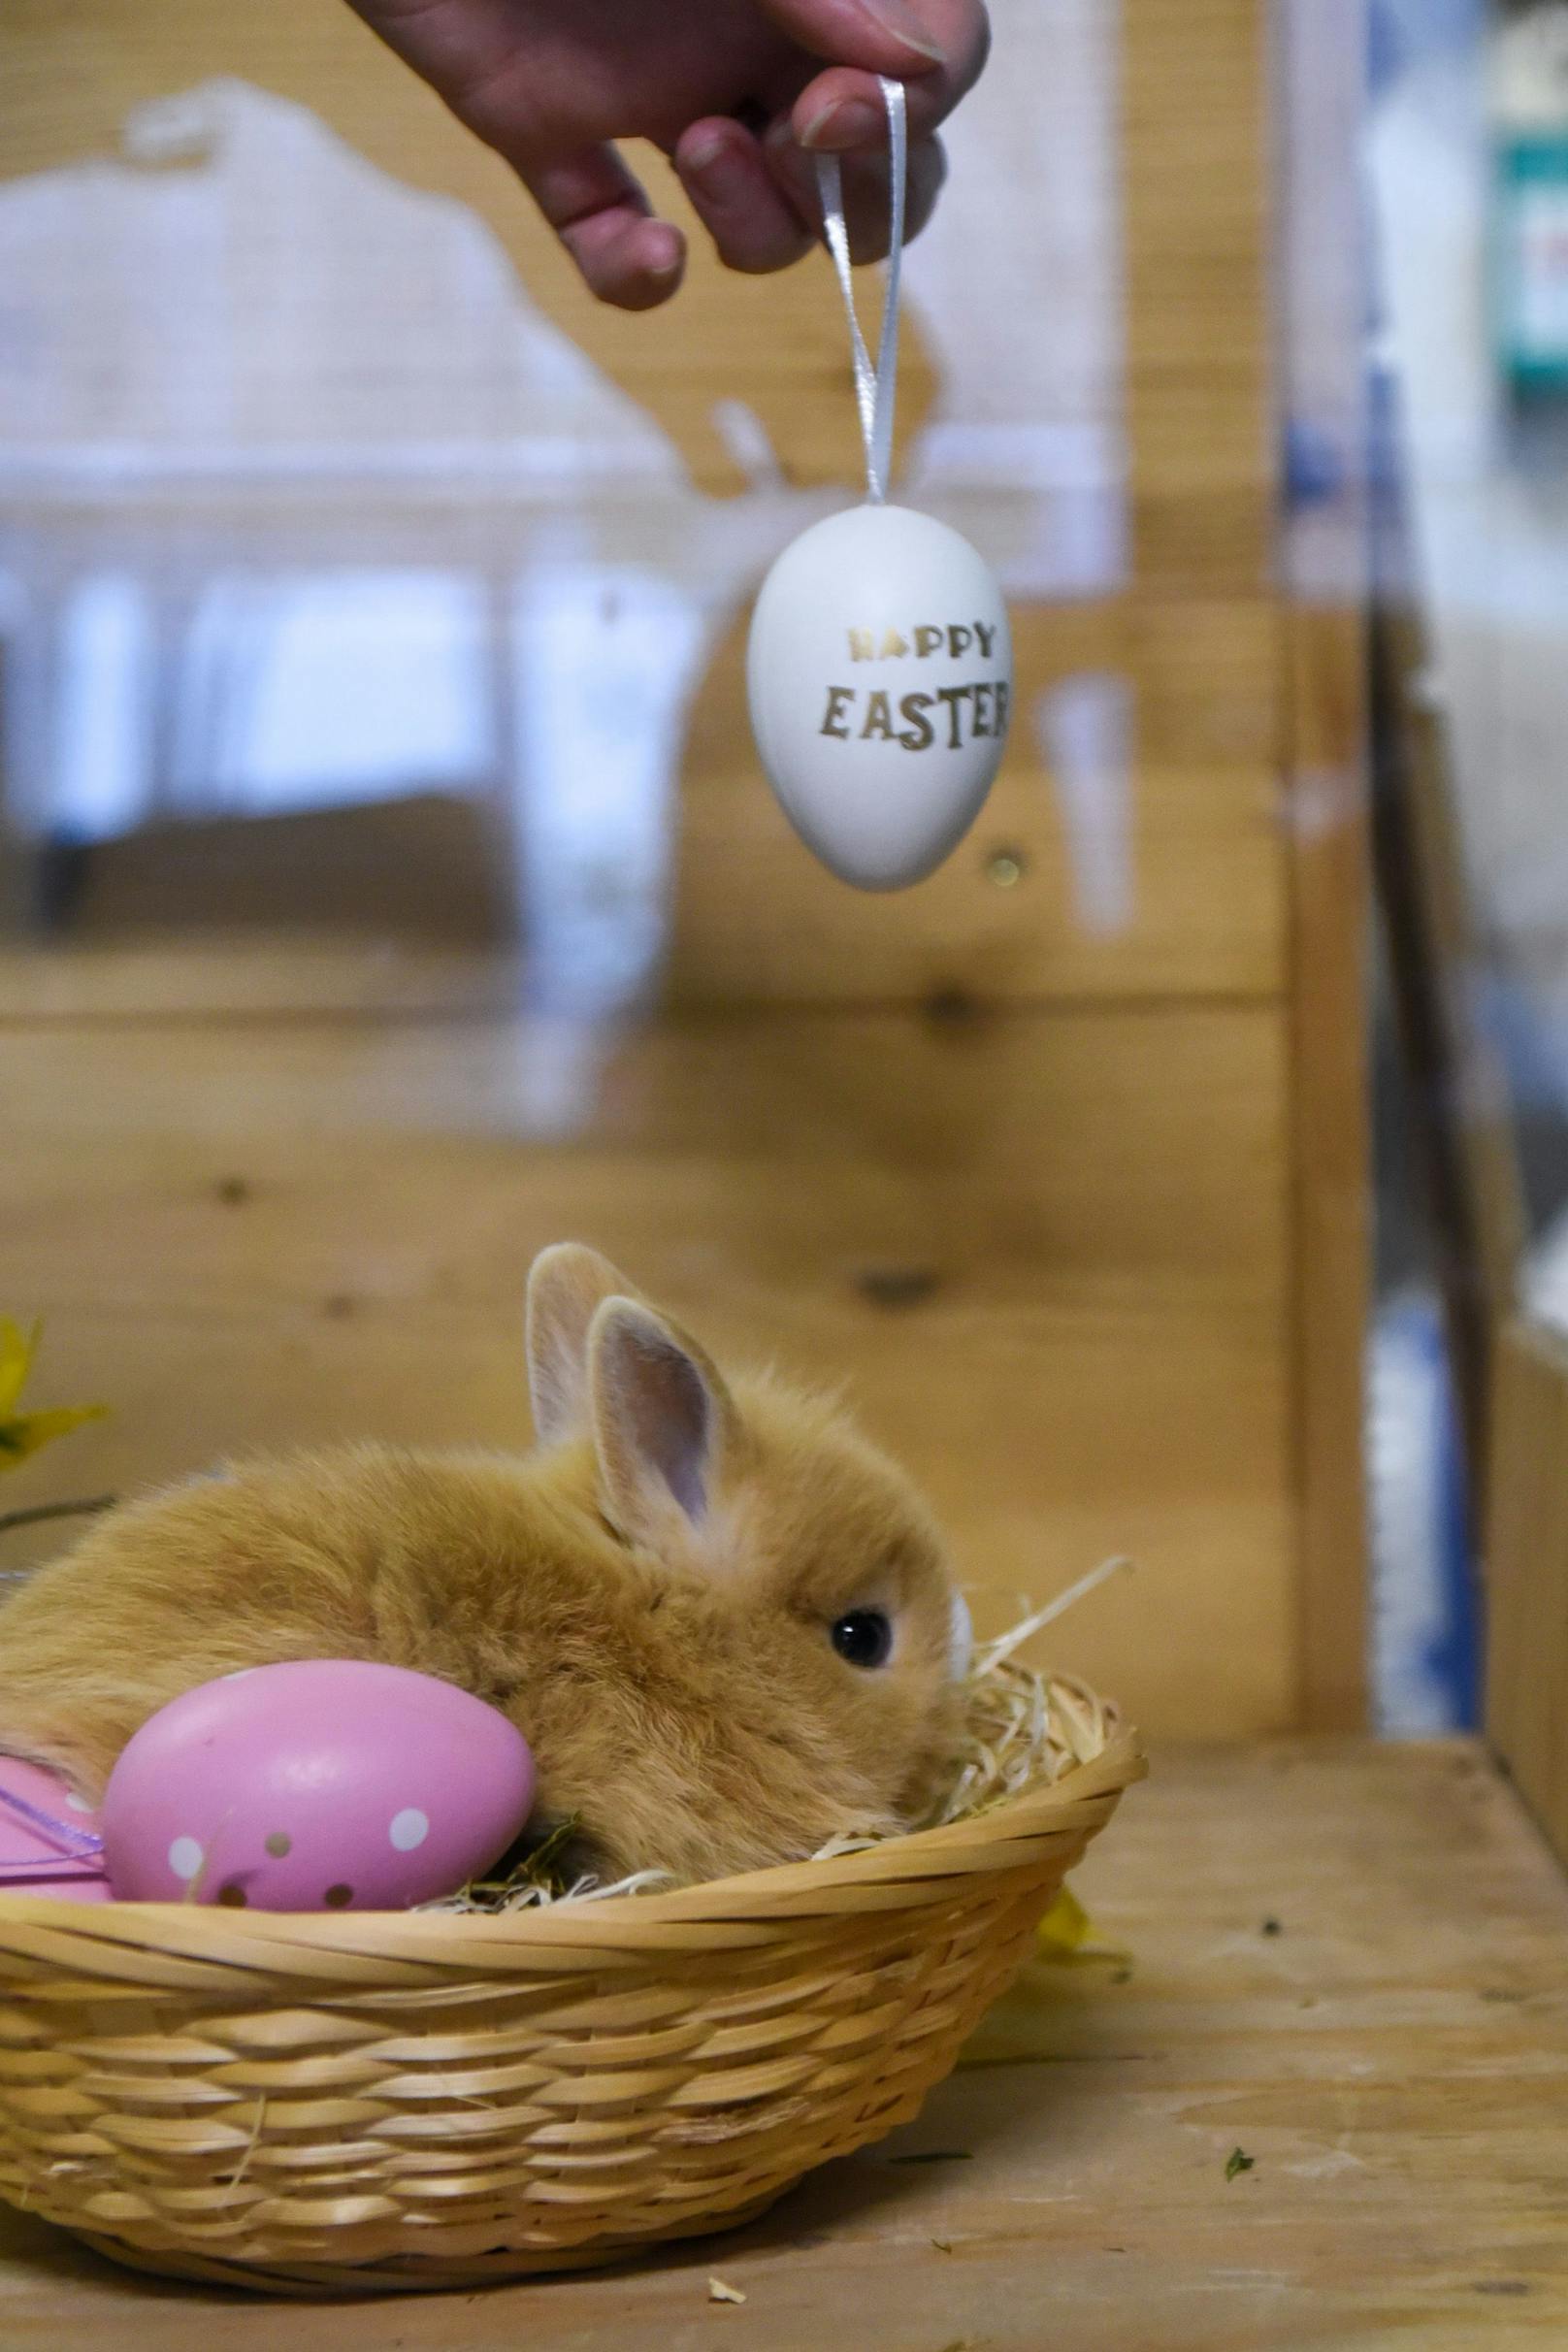 Hierbei geht natürlich nicht um bunt bemalte Eier und Schokolade, sondern um kleine Geschenke für die unzähligen Tierheim-Tiere. 